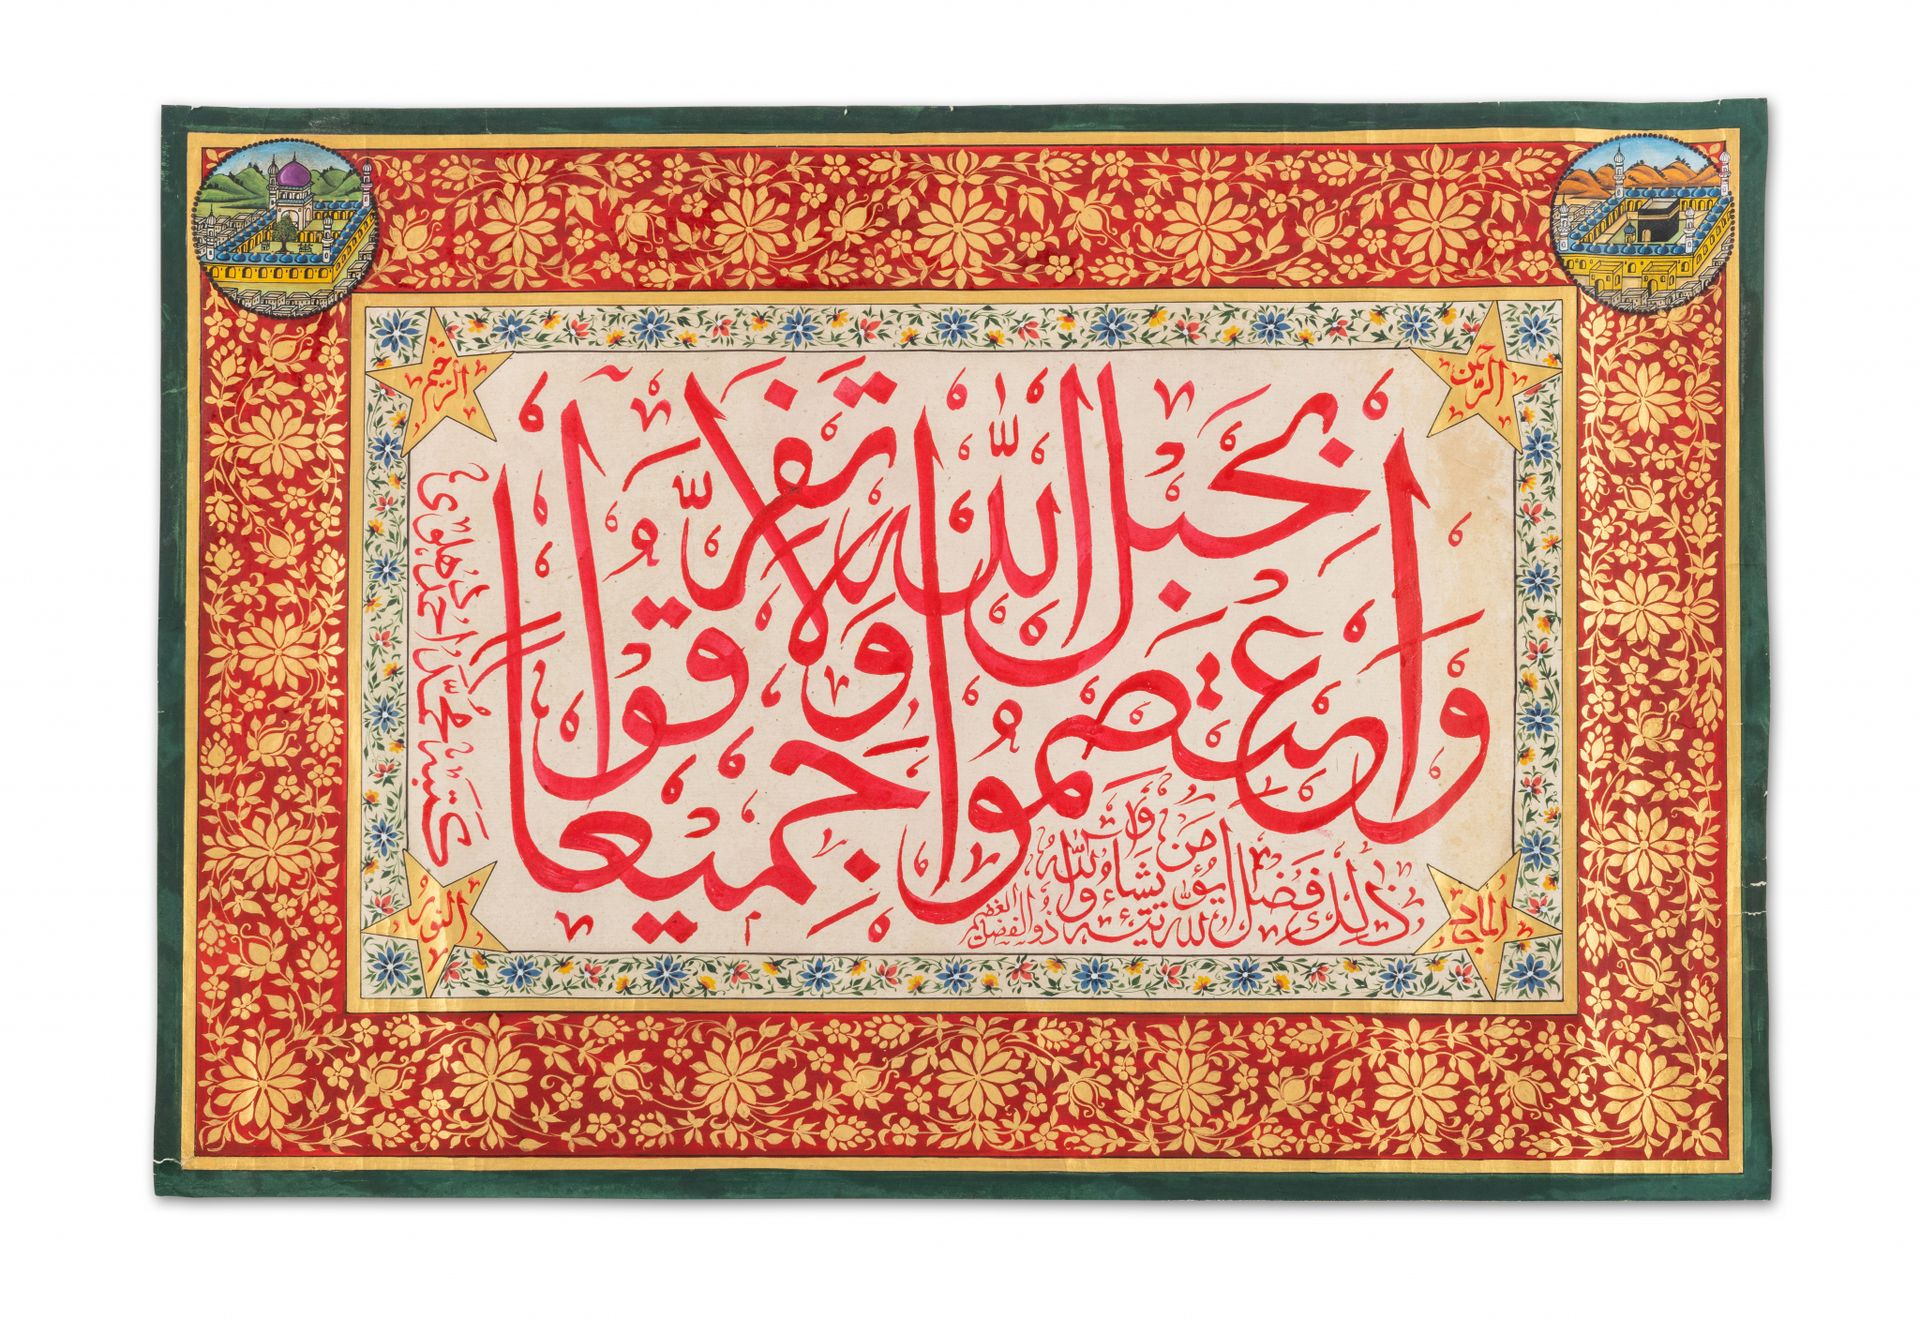 Large calligraphie India, copiado por Muhammad Ahmad ...

Caligrafía en tinta ro&hellip;